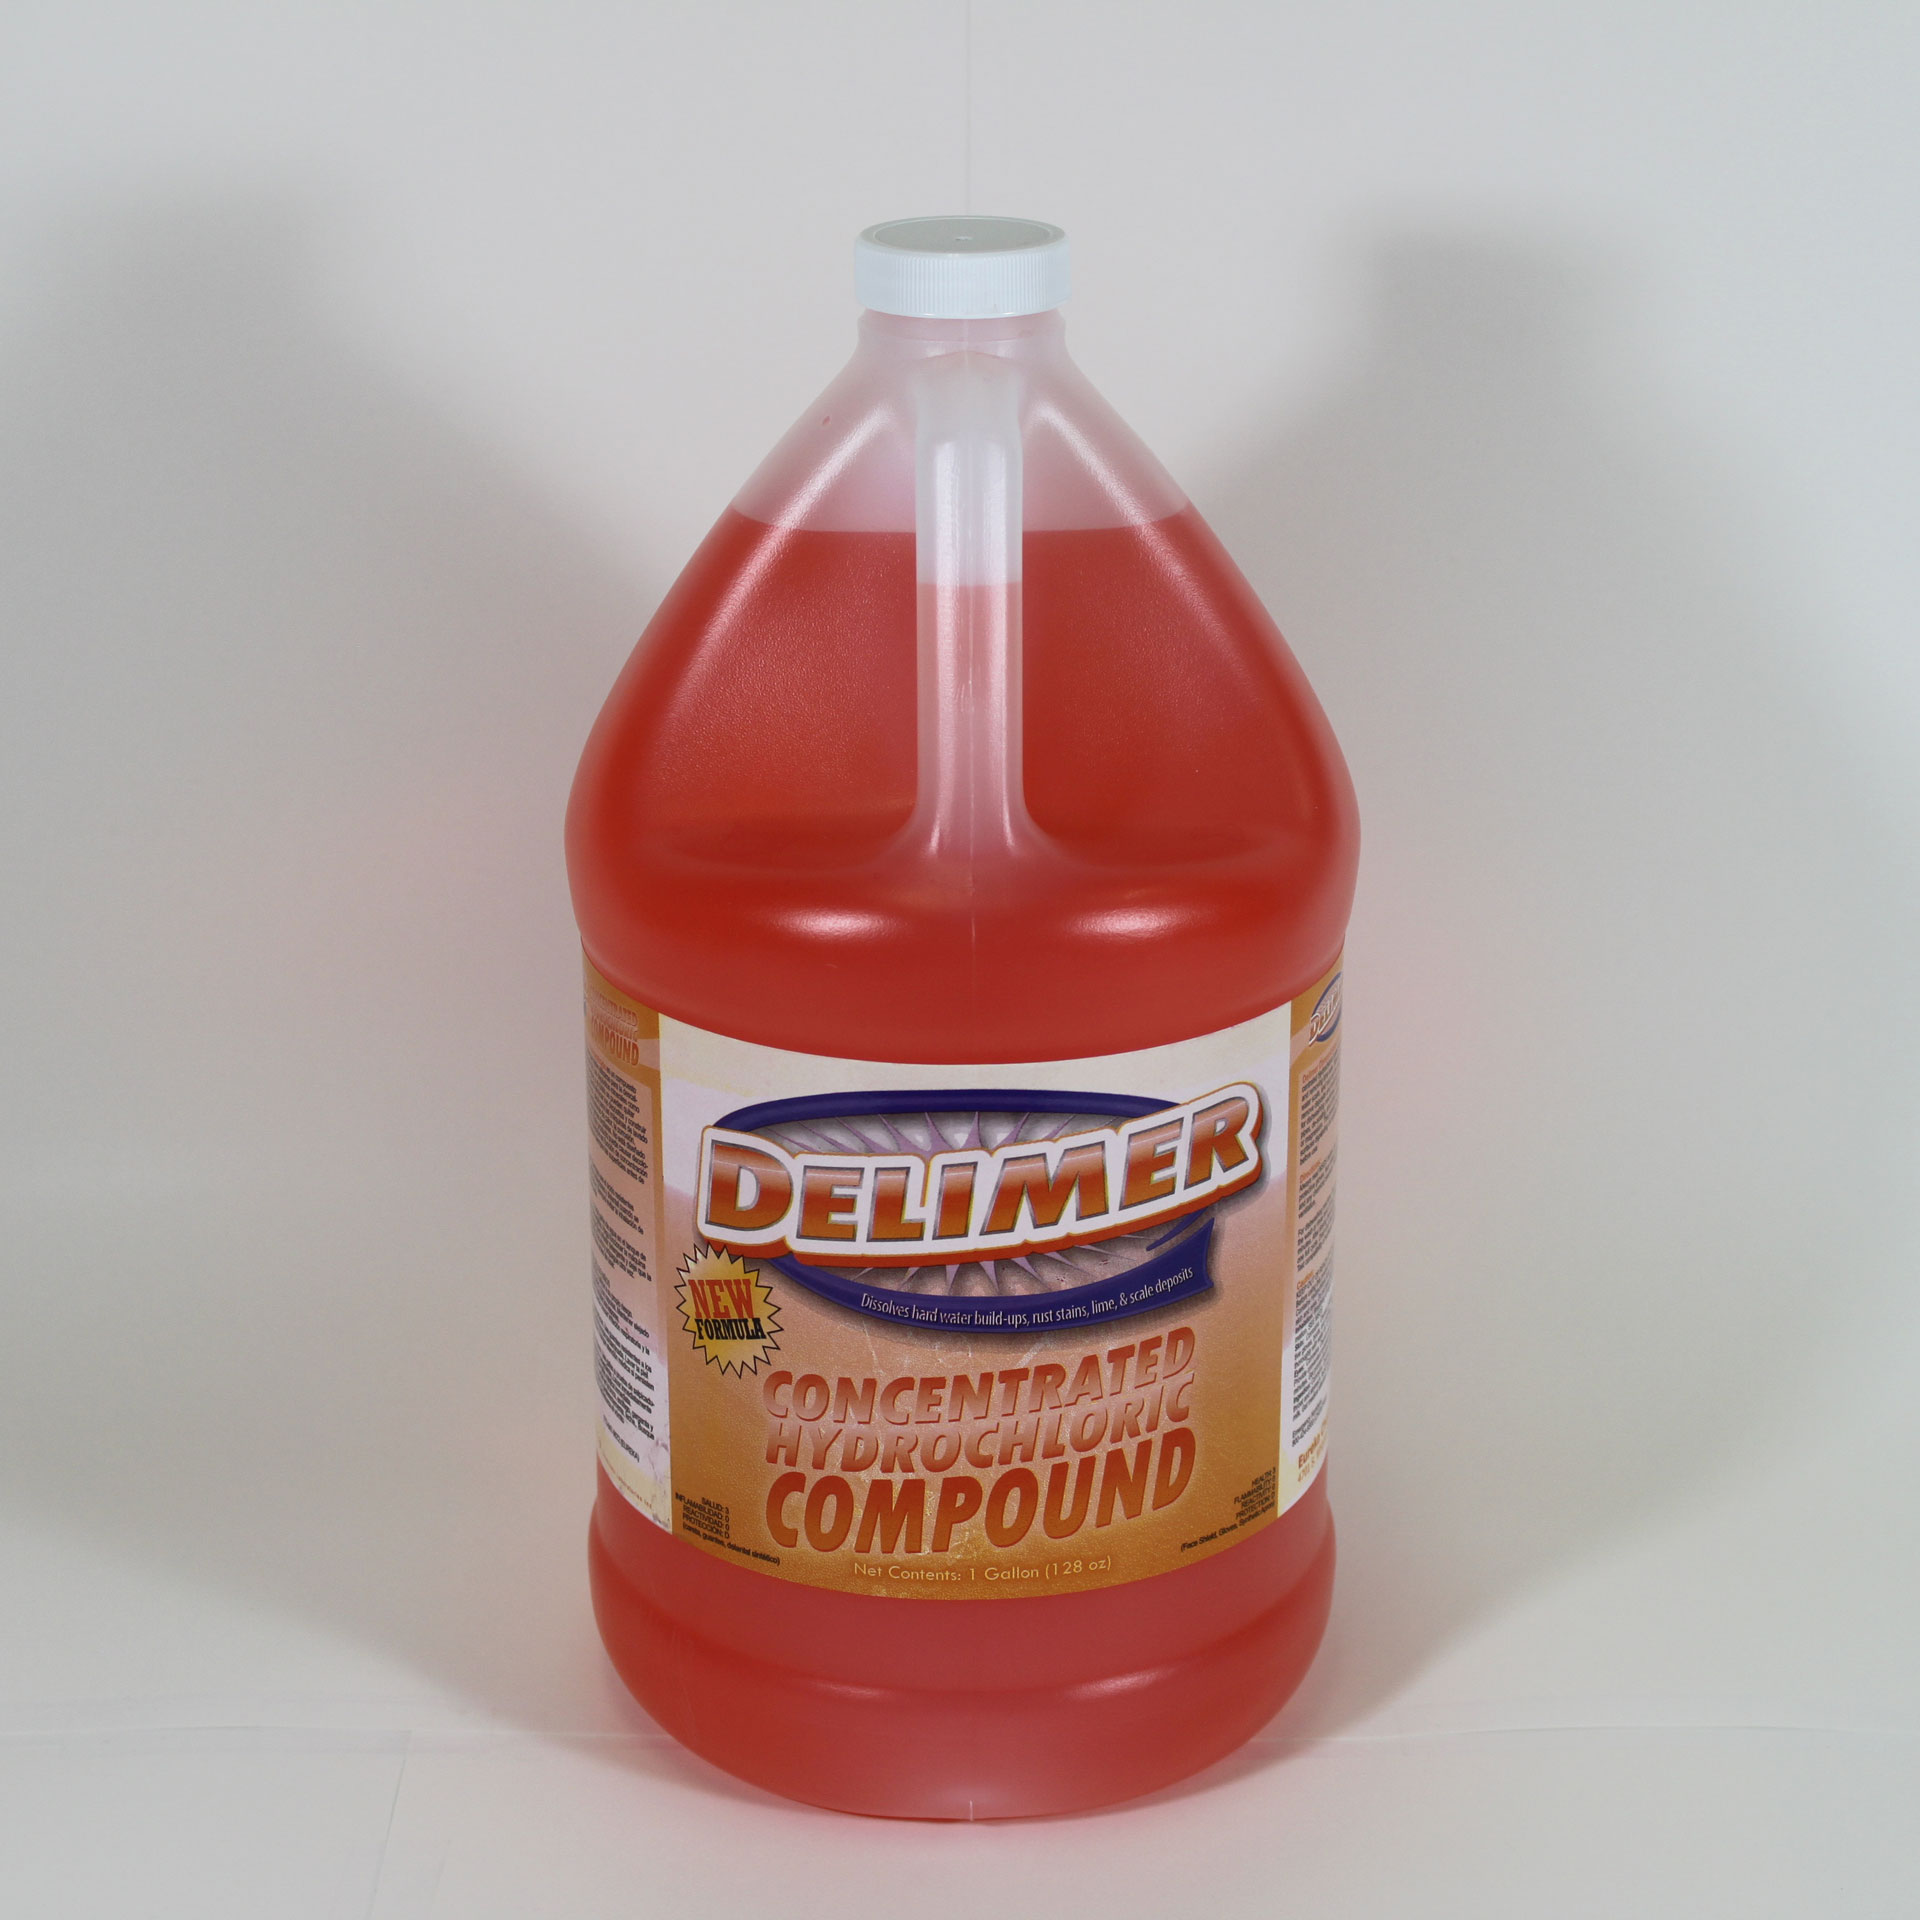 Bottle of Delimer.